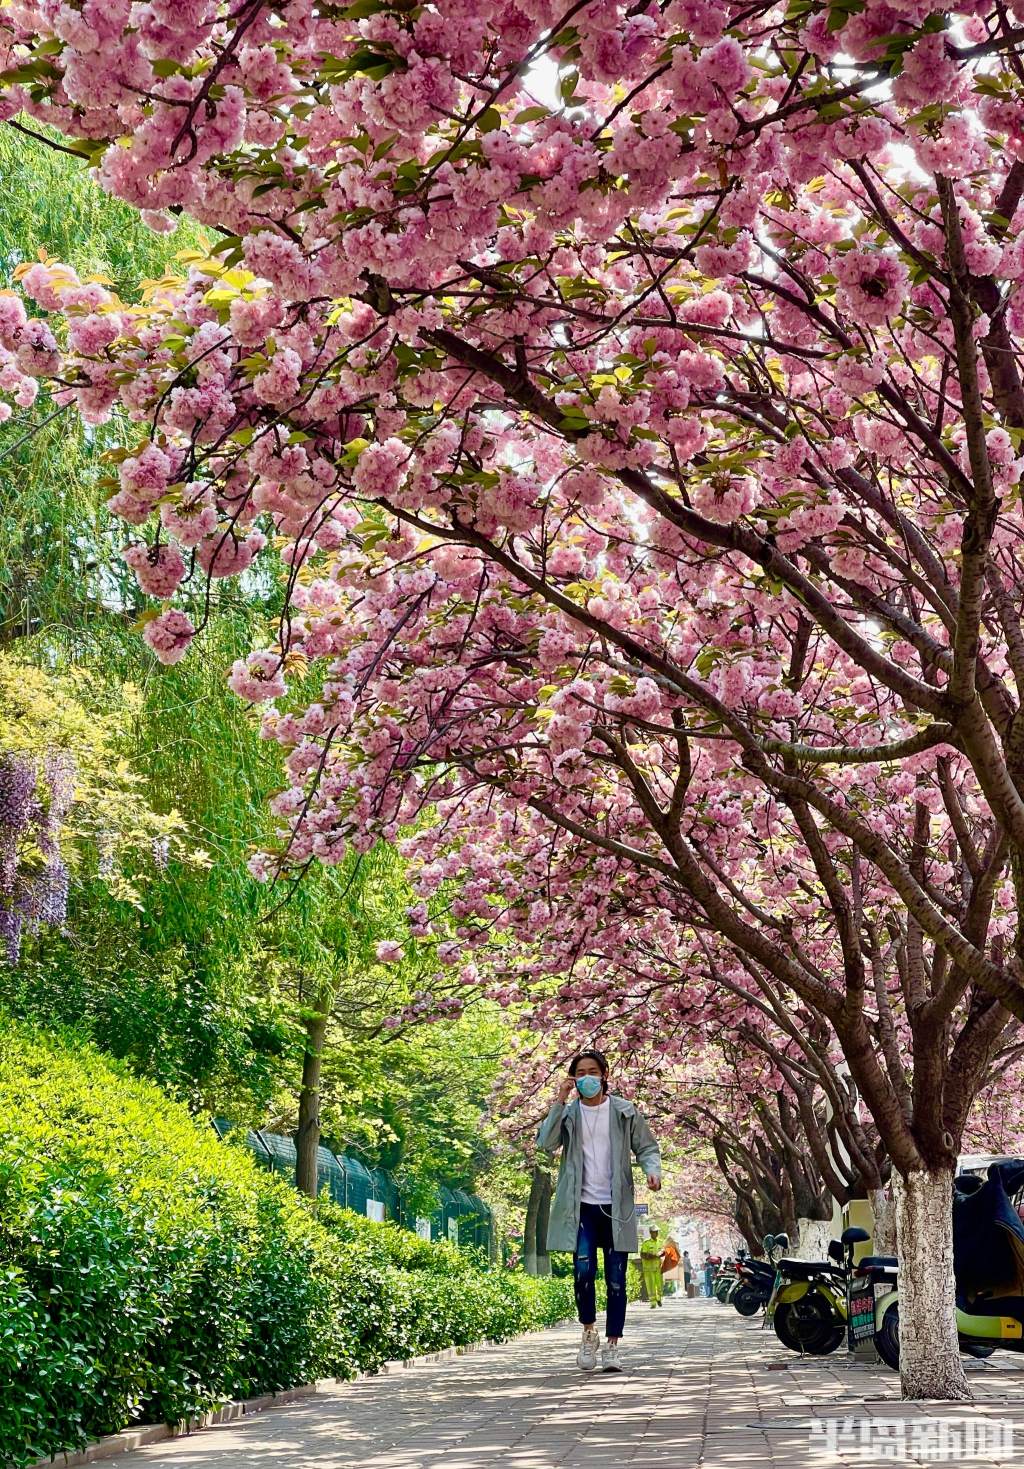 朵朵樱花将街道装点一新,给过往行人带来美的享受.